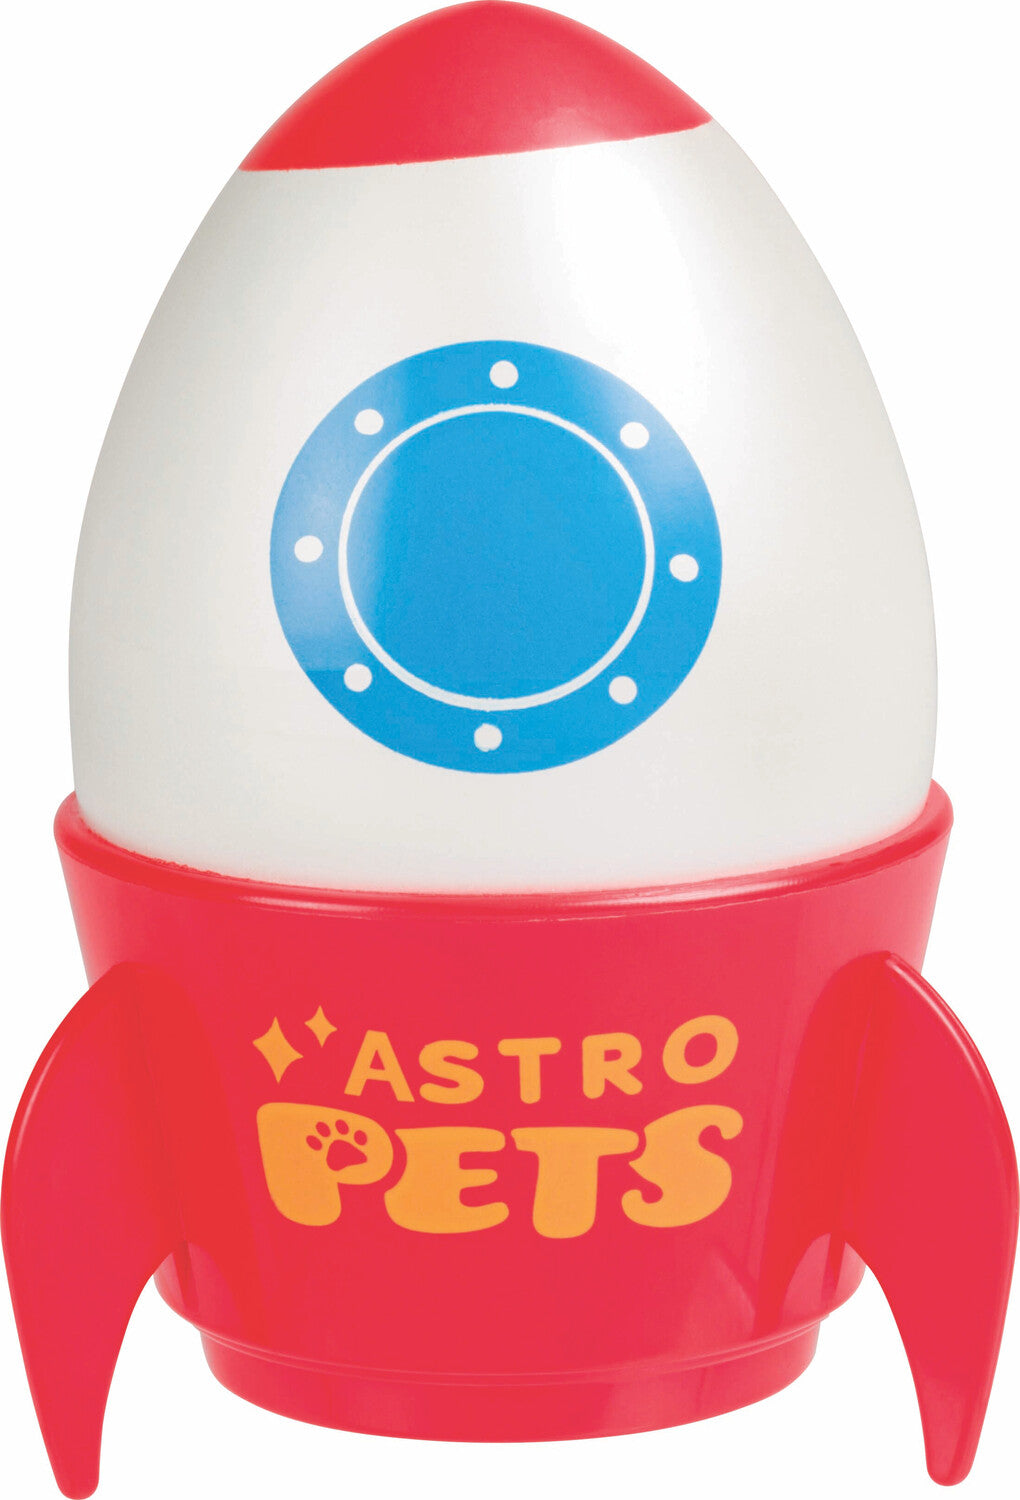 Astro Grow Pets 